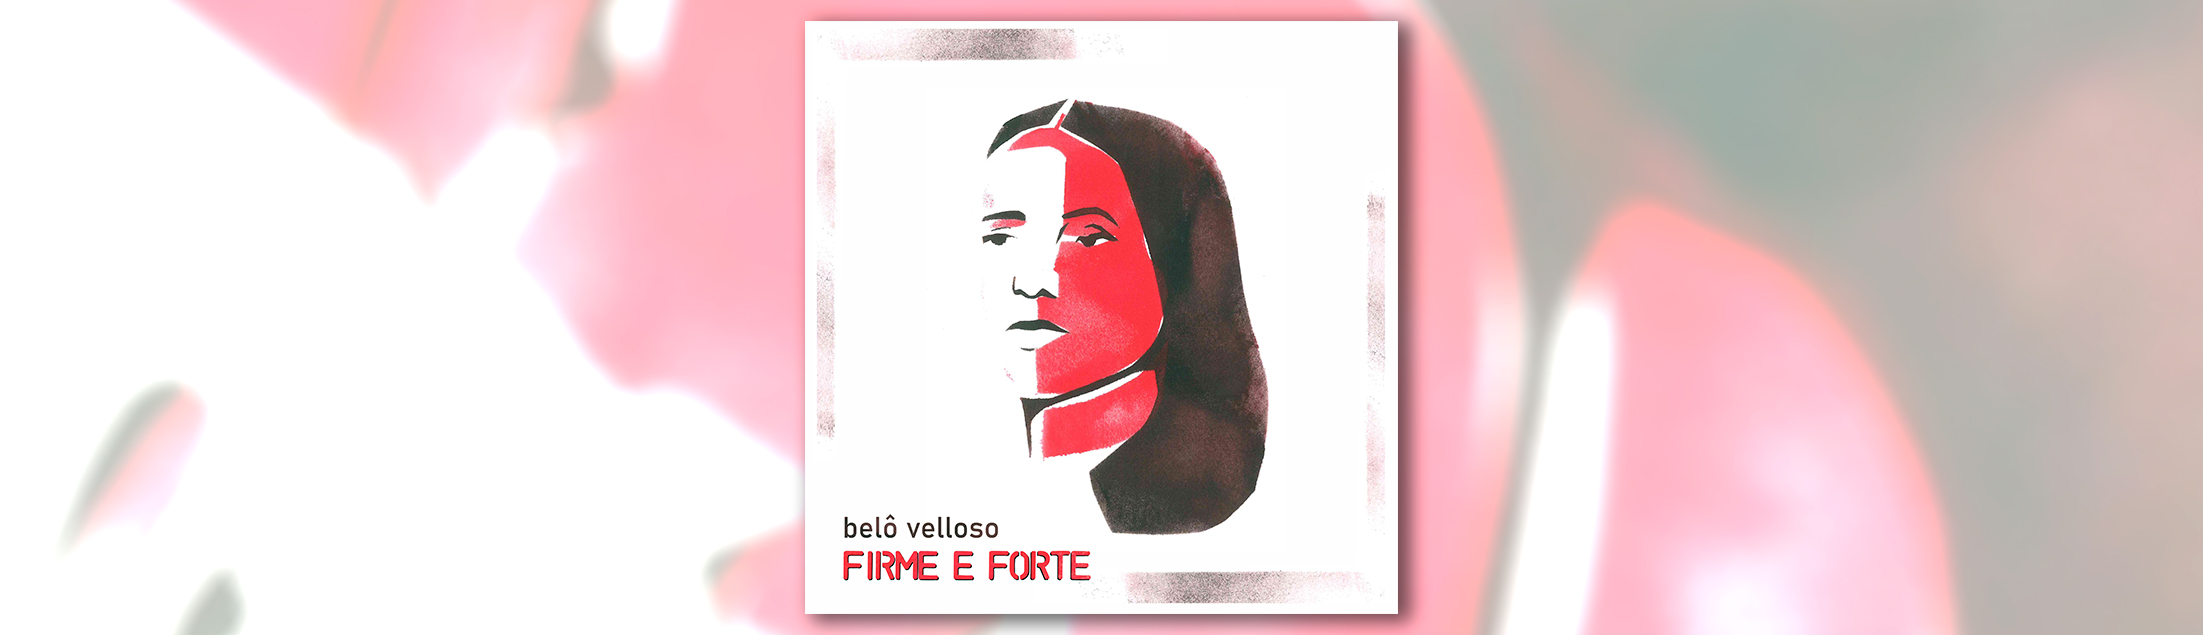 Belô Velloso lança single com a releitura de um clássico do Psirico